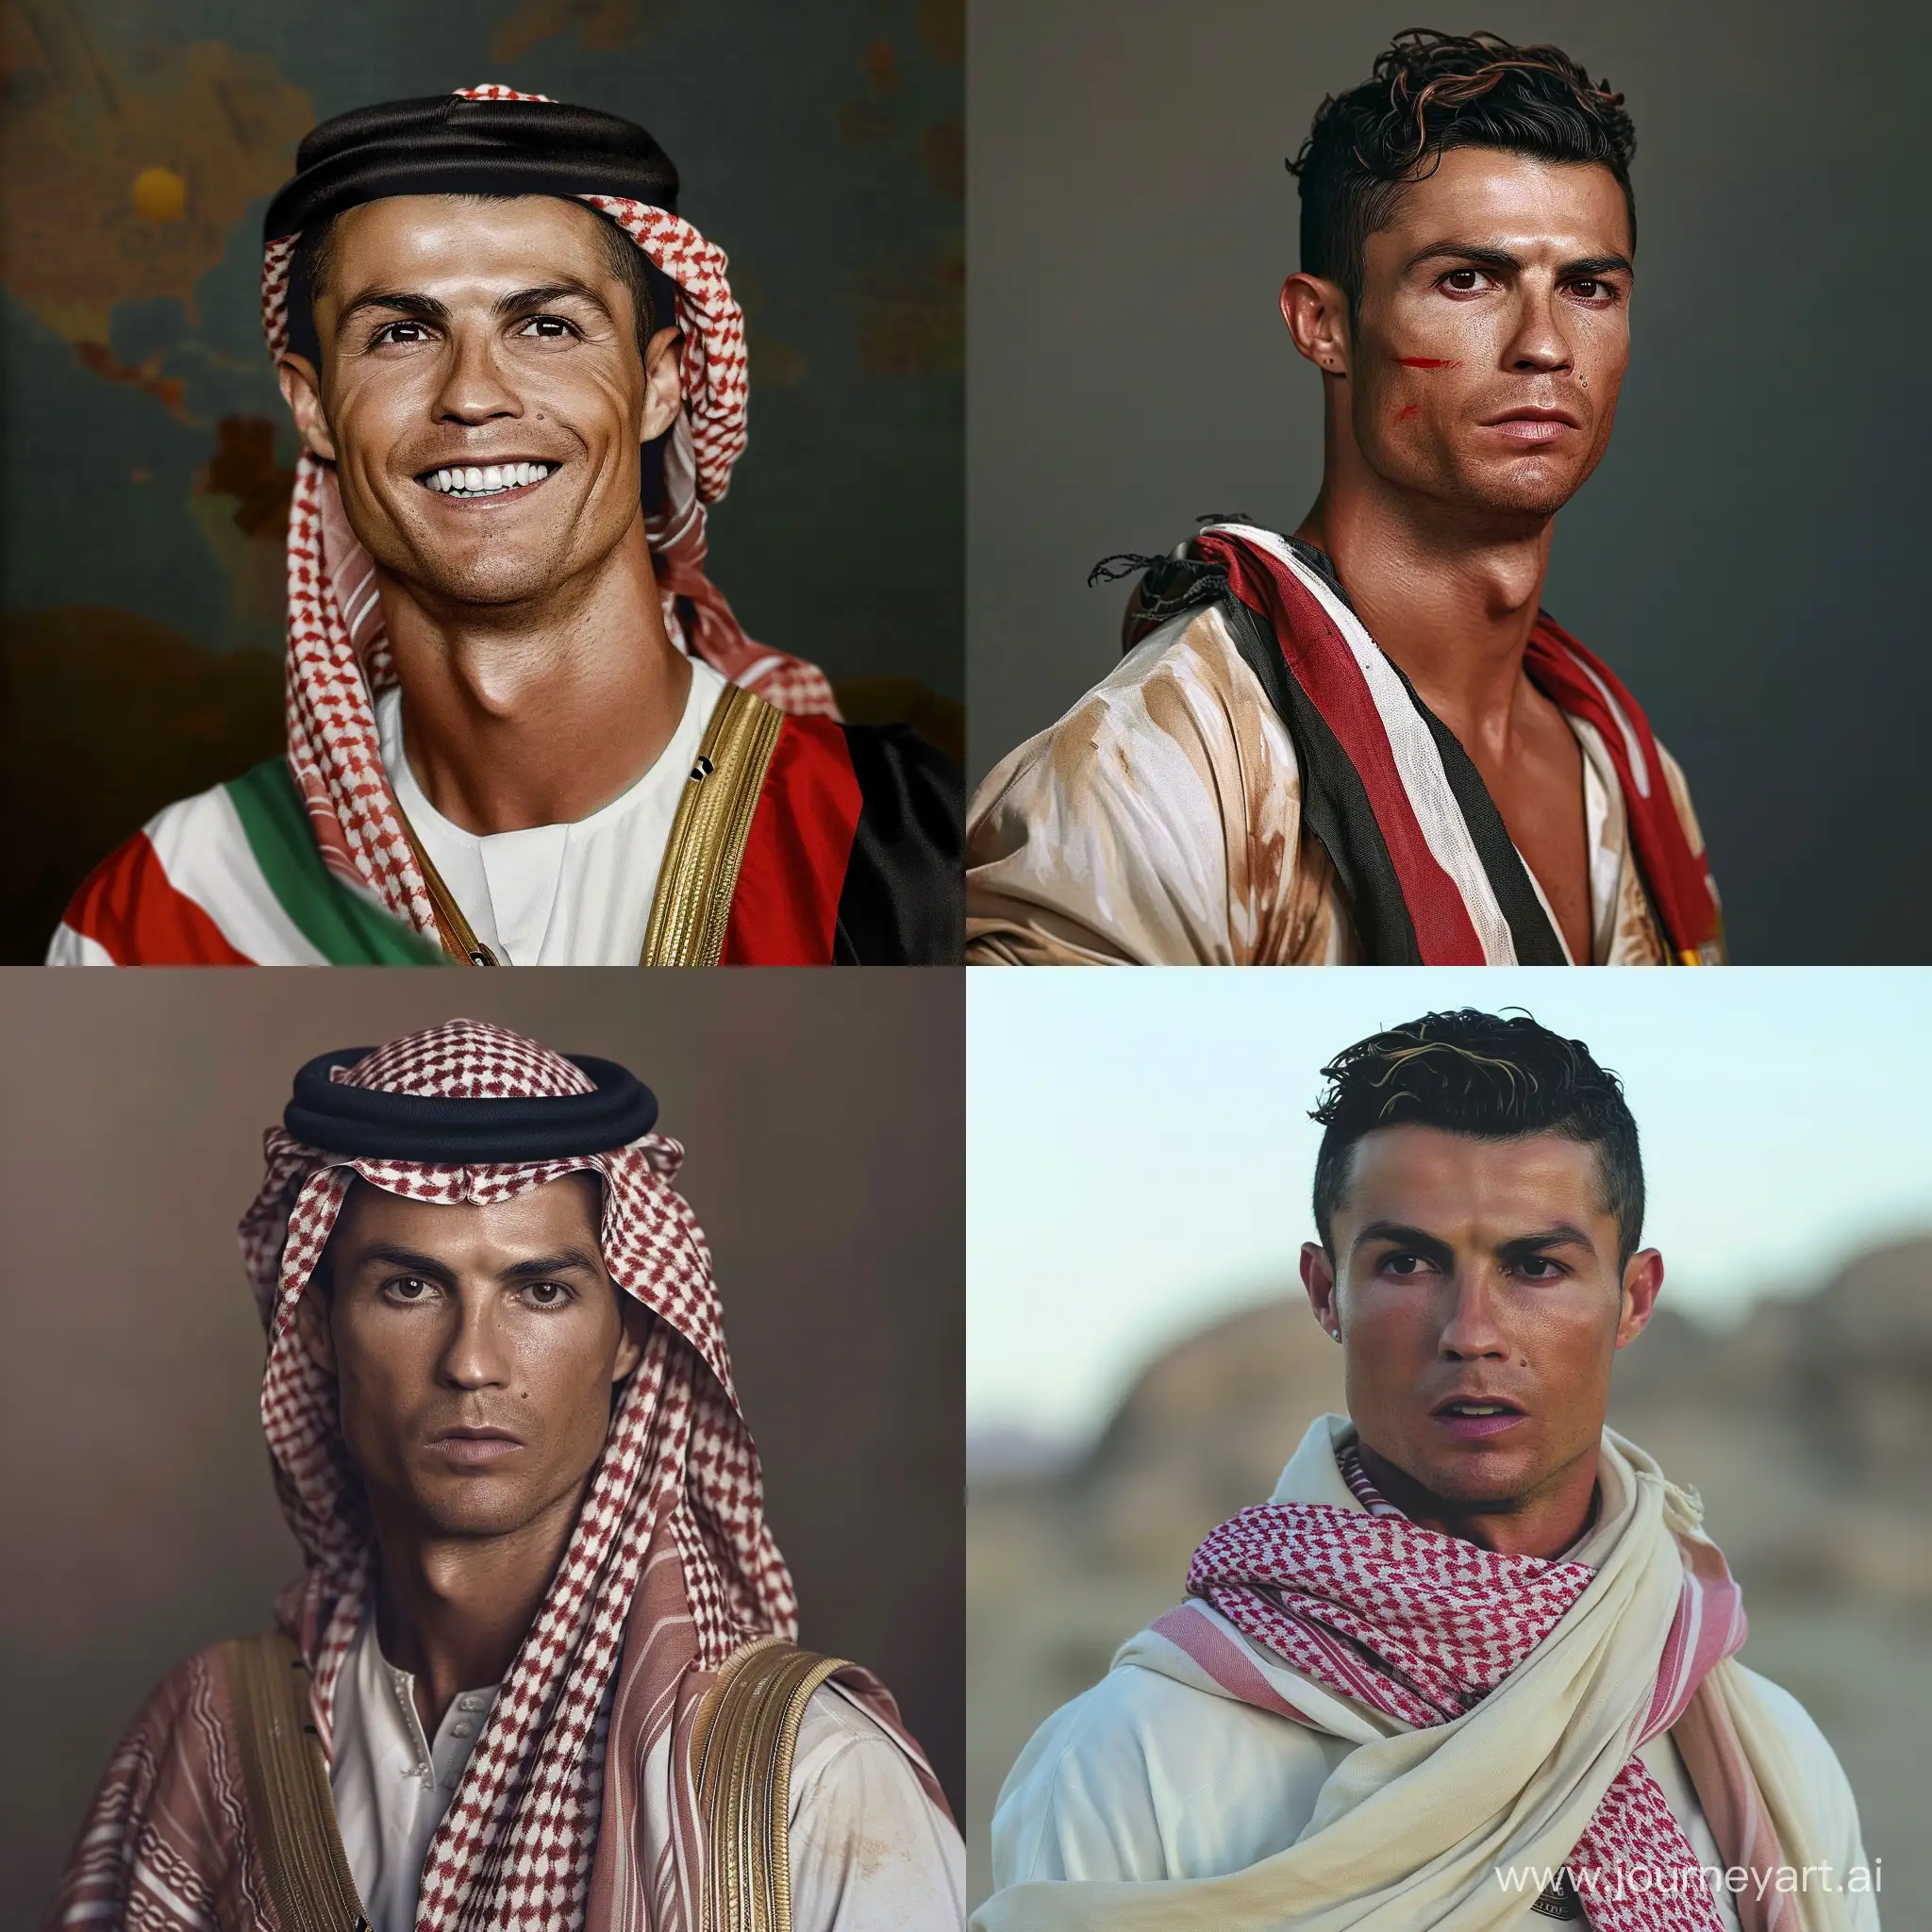 Yemeni-Cristiano-Ronaldo-Imaginary-Portrait-with-Unique-Perspective